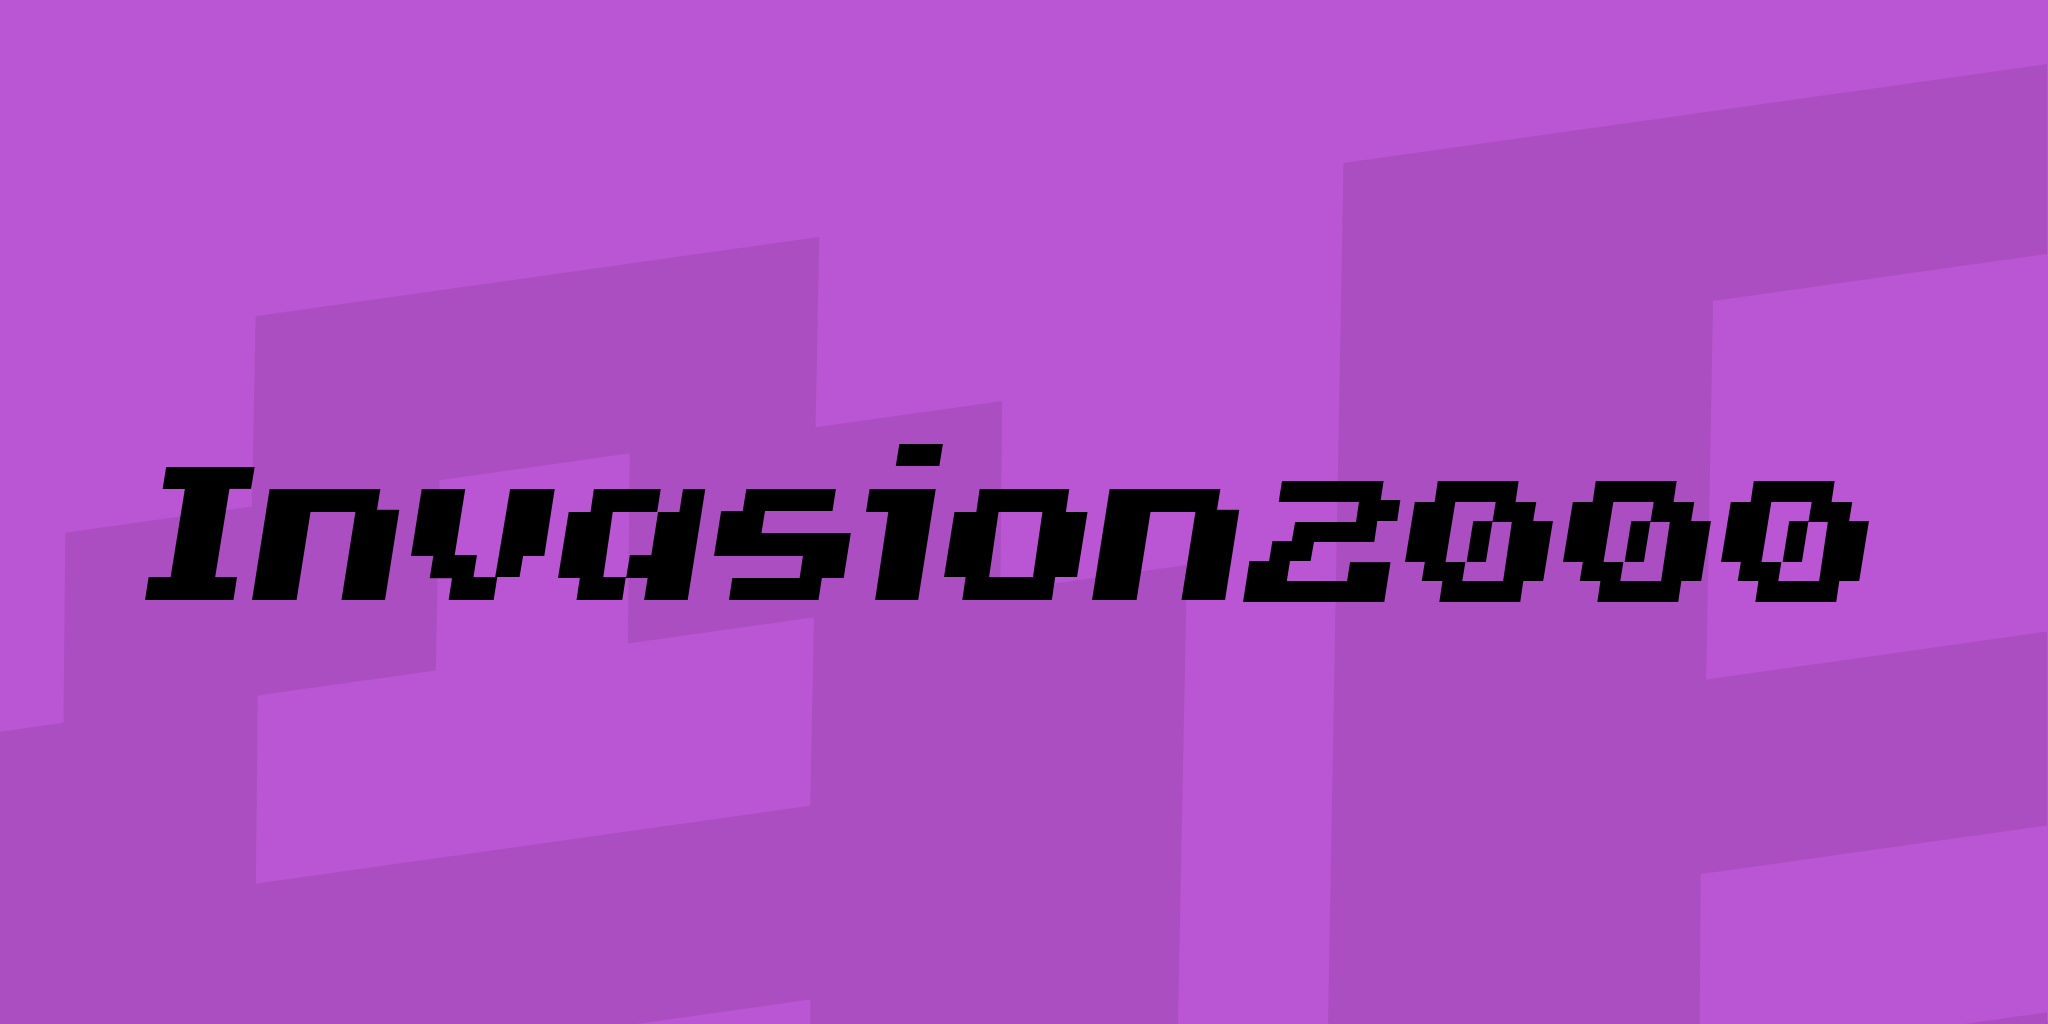 Invasion 2000